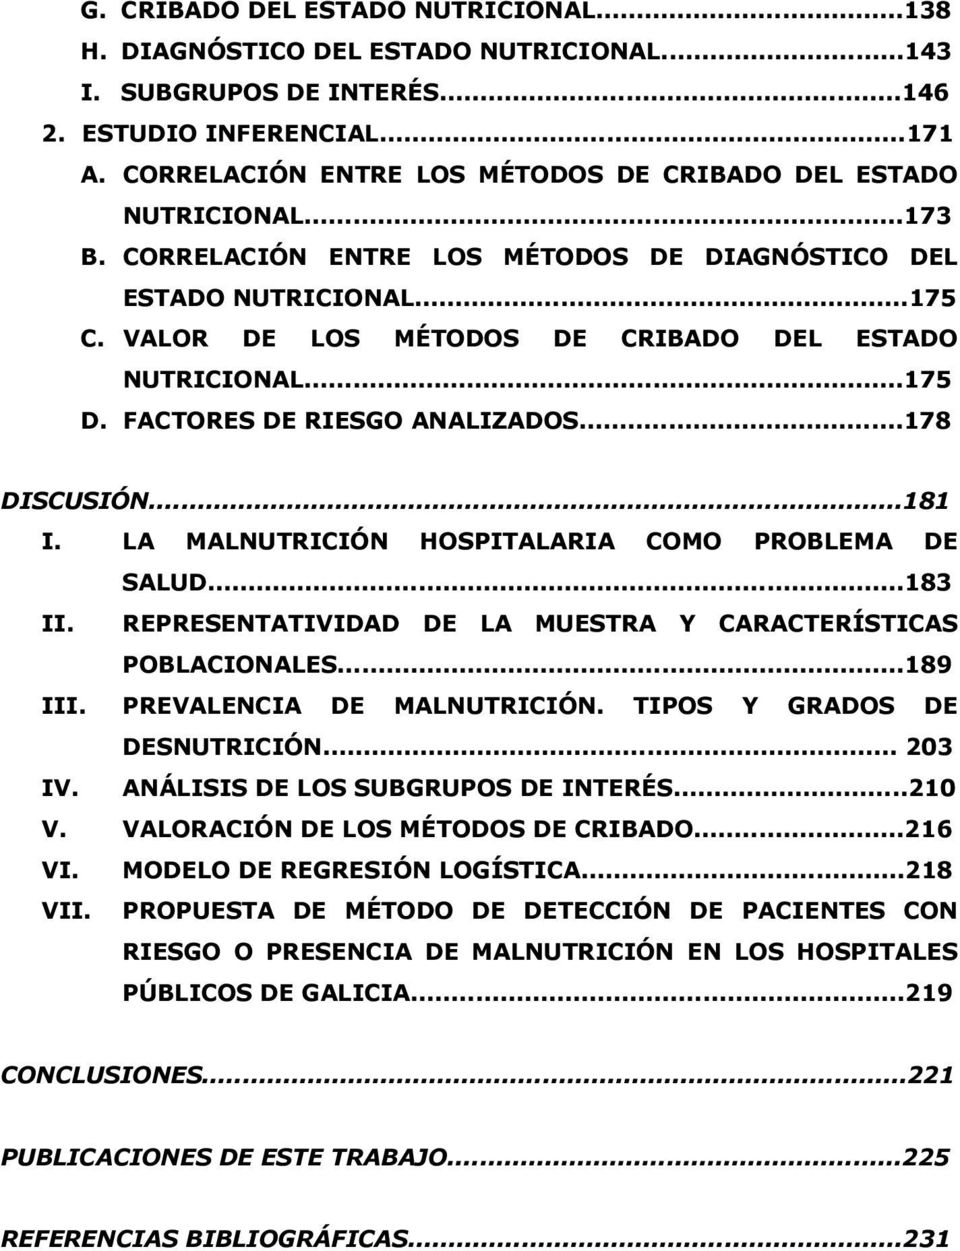 VALOR DE LOS MÉTODOS DE CRIBADO DEL ESTADO NUTRICIONAL...175 D. FACTORES DE RIESGO ANALIZADOS...178 DISCUSIÓN...181 I. LA MALNUTRICIÓN HOSPITALARIA COMO PROBLEMA DE SALUD...183 II.